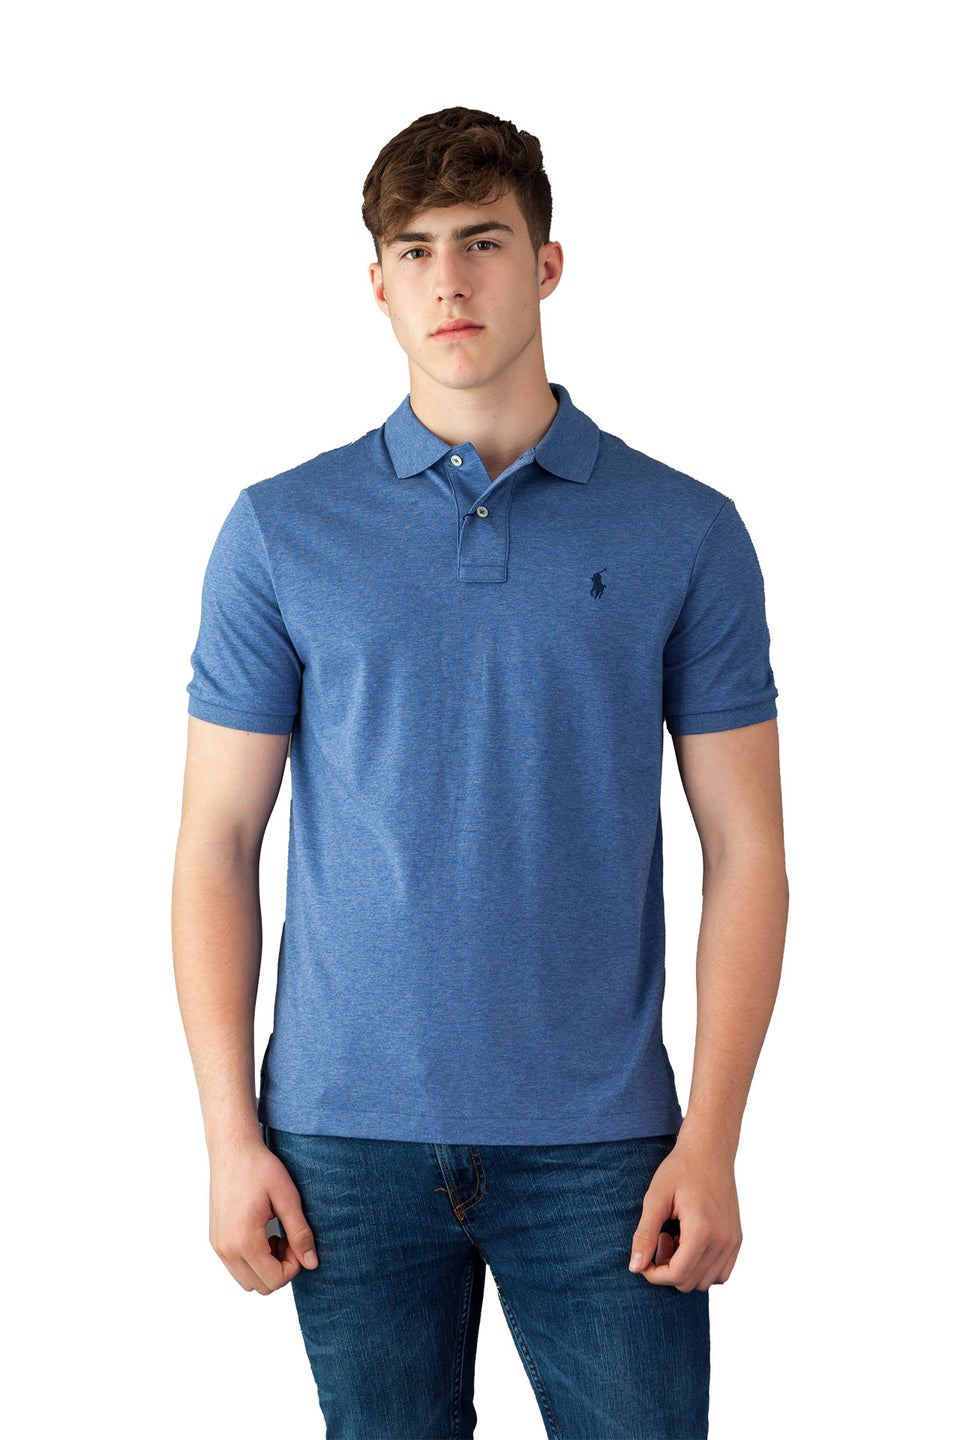 Ralph Lauren Light Blue Polo Shirt - Camden Connaught